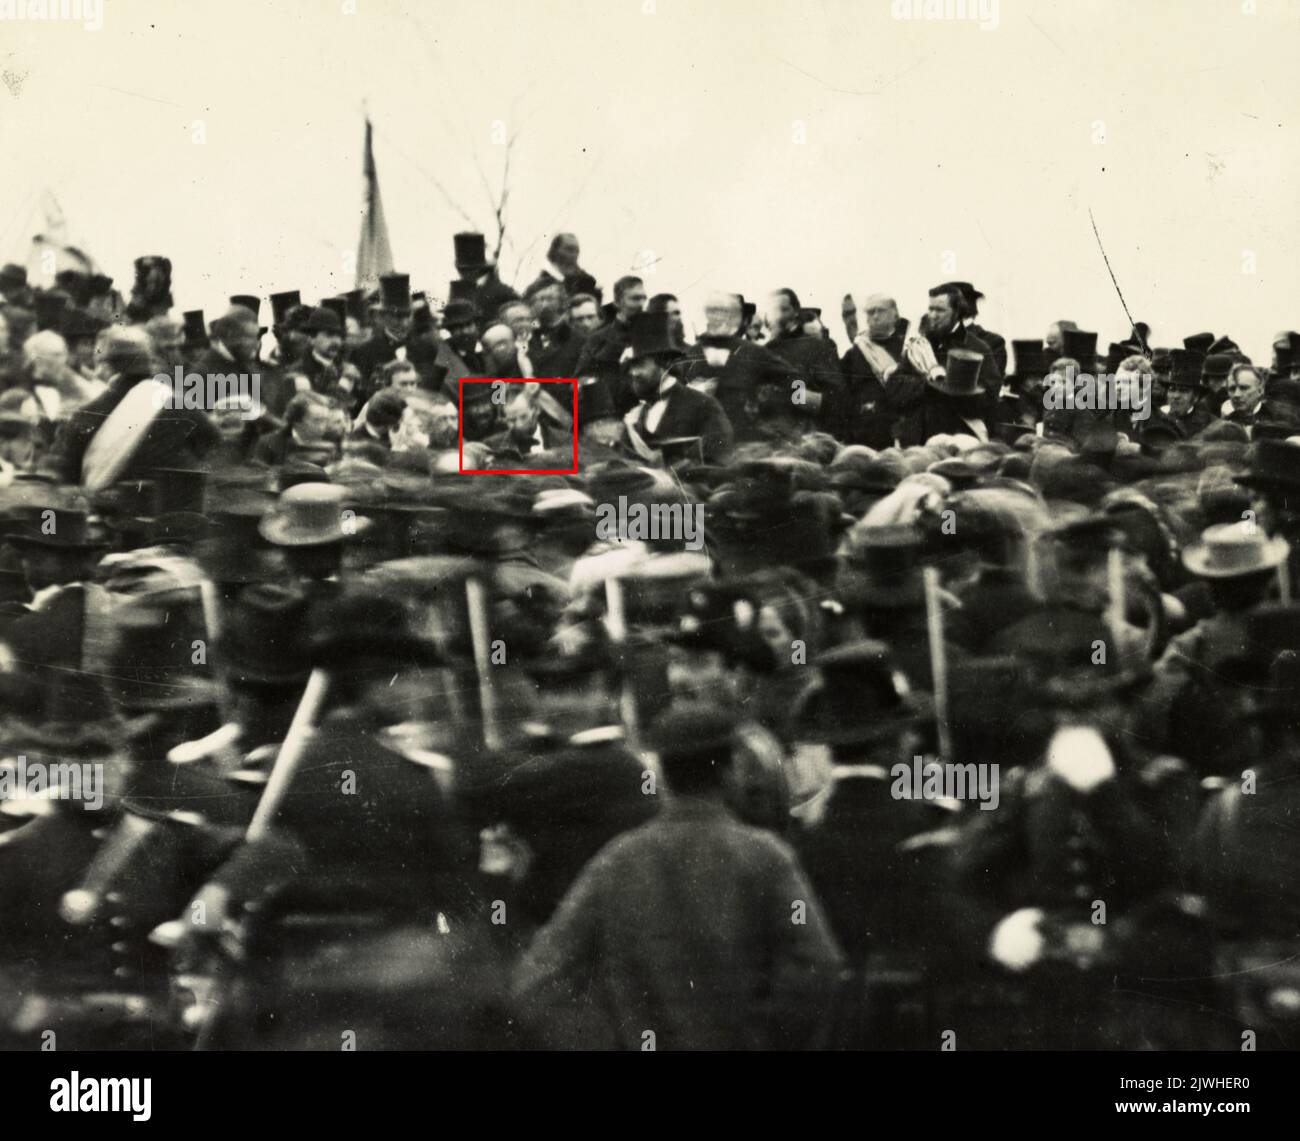 Präsident Abraham Lincoln (rot hervorgehoben) am 19. November 1863 in Gettysburg. Etwa drei Stunden später hielt er die Gettysburg-Rede, eine der bekanntesten Reden der amerikanischen Geschichte. Siehe Bild 2JWHER1 für dieses Bild ohne das rote Markierungsfeld. Stockfoto